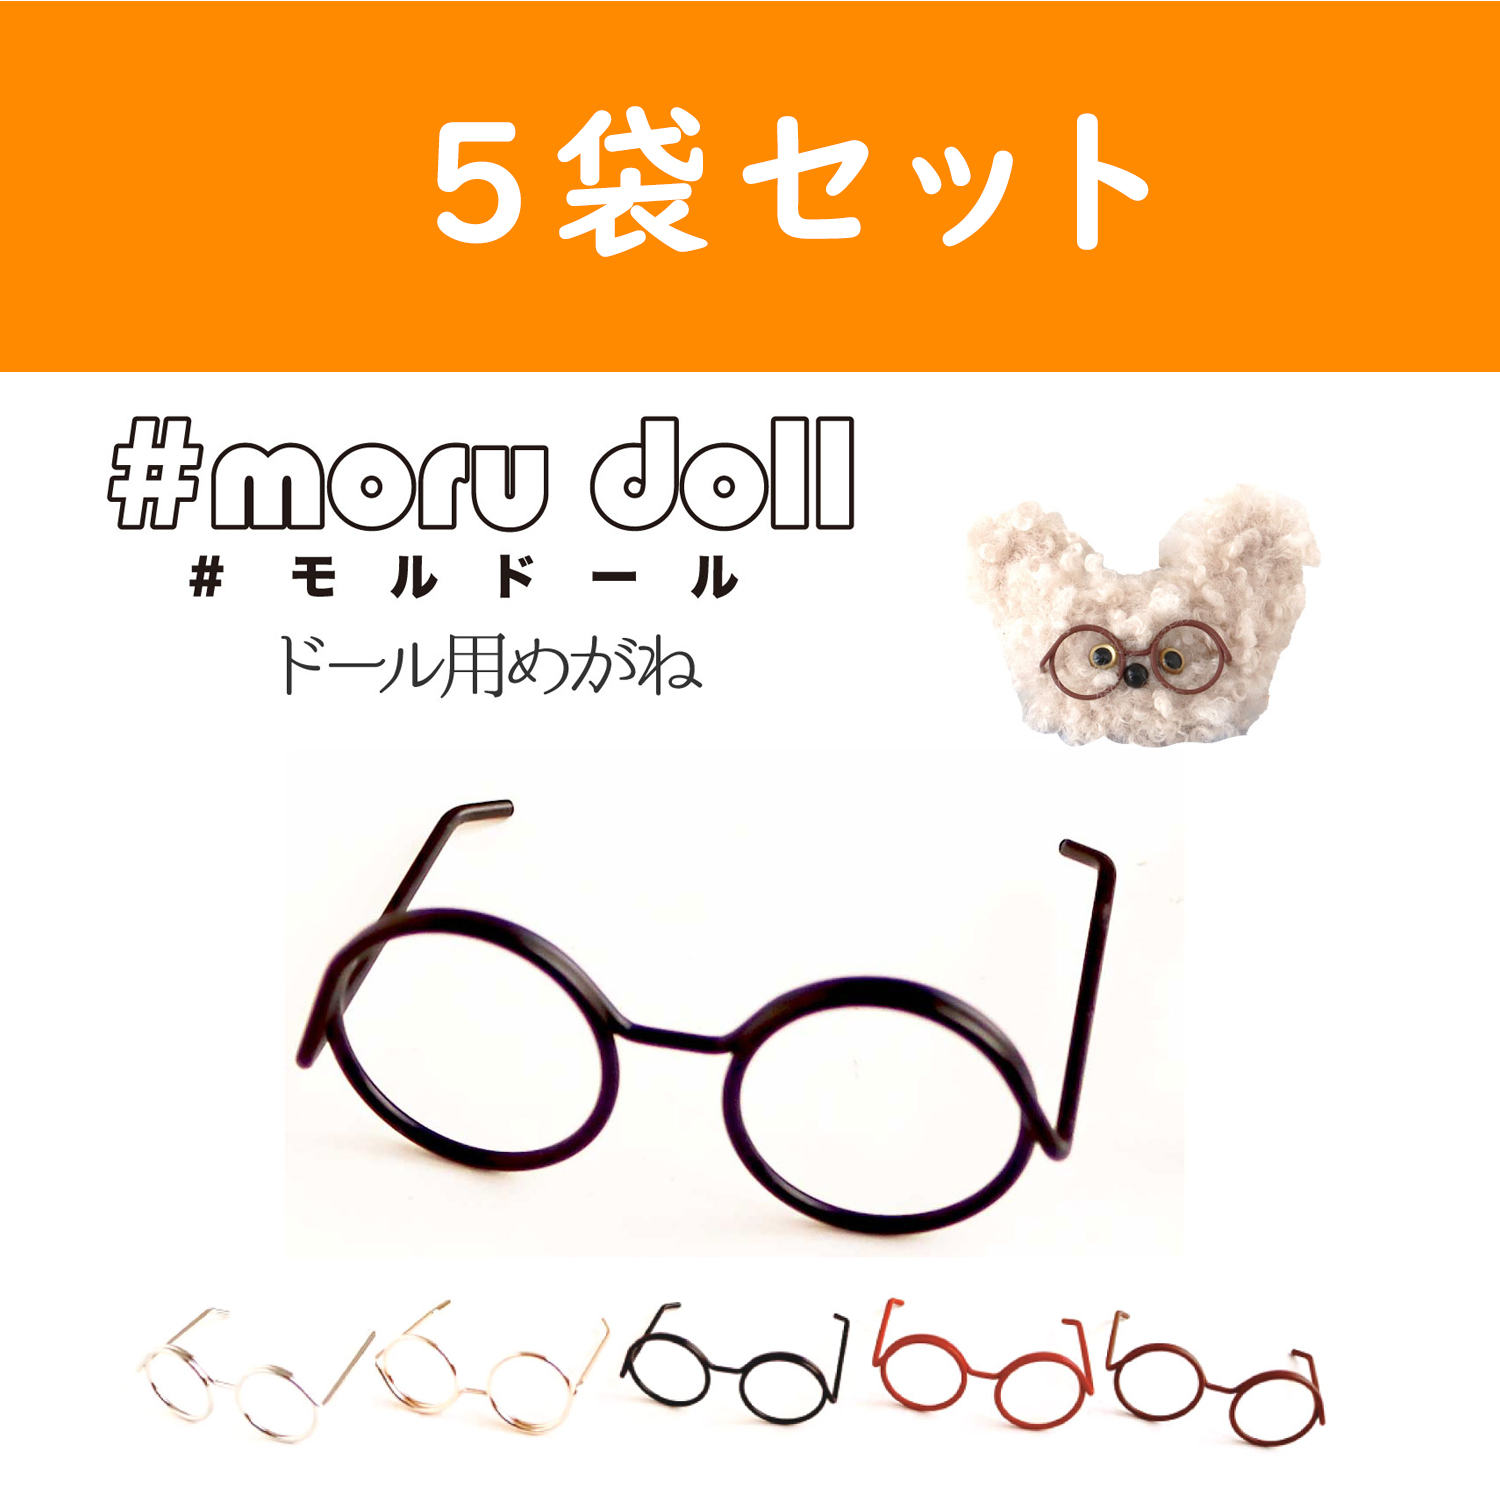 【キャンペーン対象】MOL-5 モール人形 モールドール  めがねパーツ 1個入×5袋セット (セット)